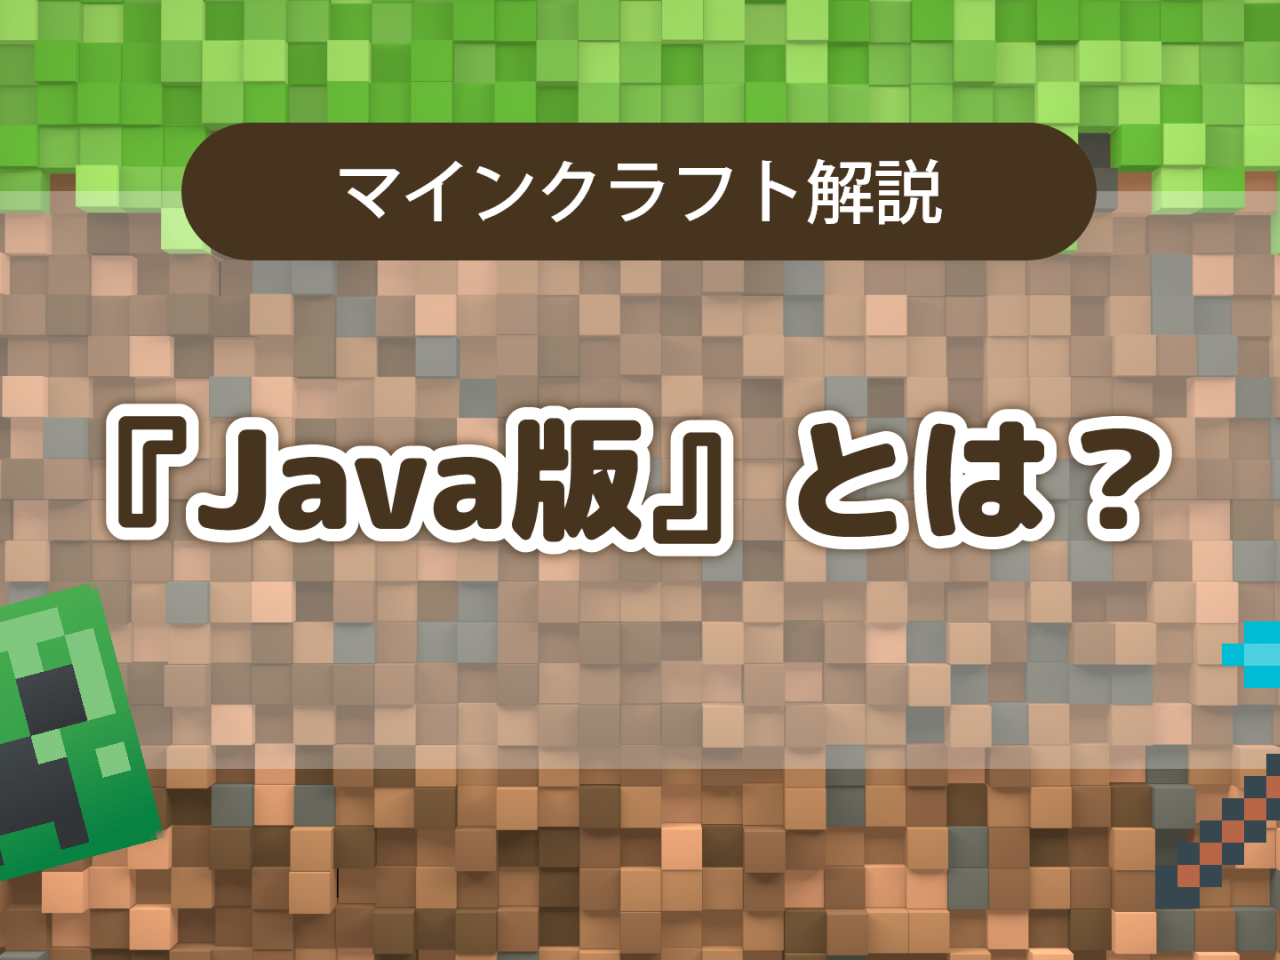 マインクラフト Java版とは 特徴やおススメの遊び方を解説する